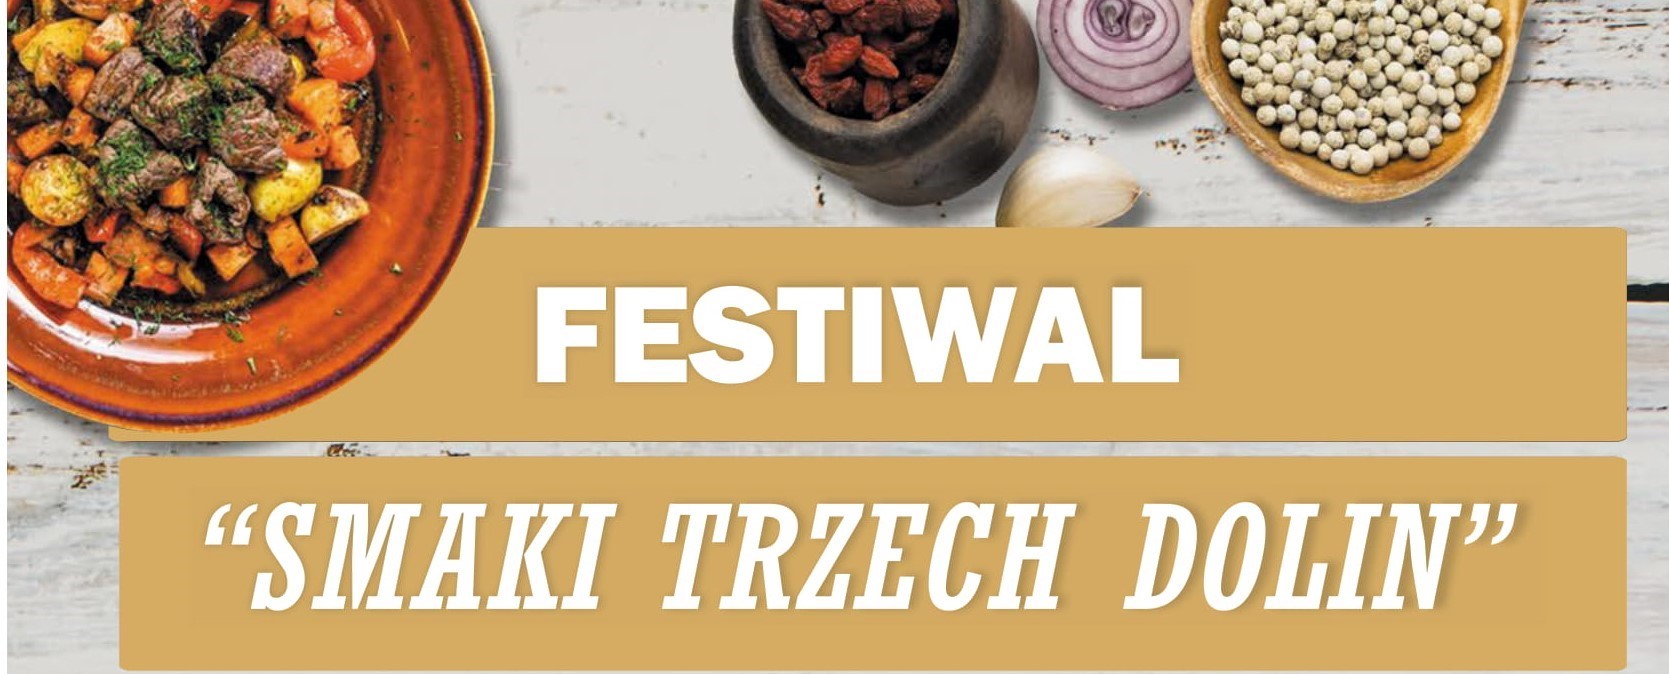 Festiwal Trzech Dolin